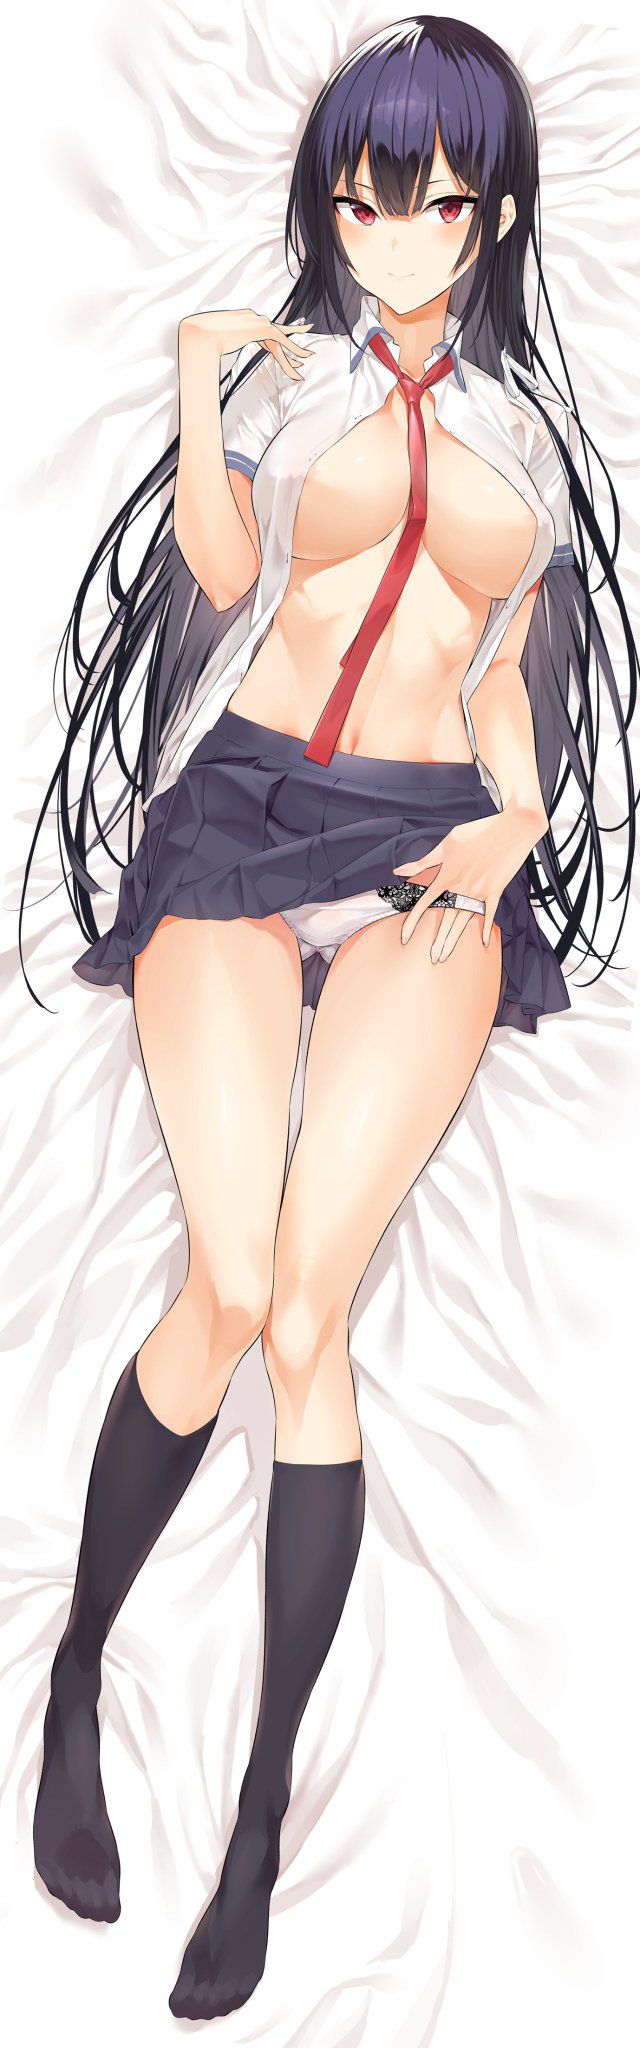 【Secondary】Sailor suit/ uniform image sle [erotic] 31